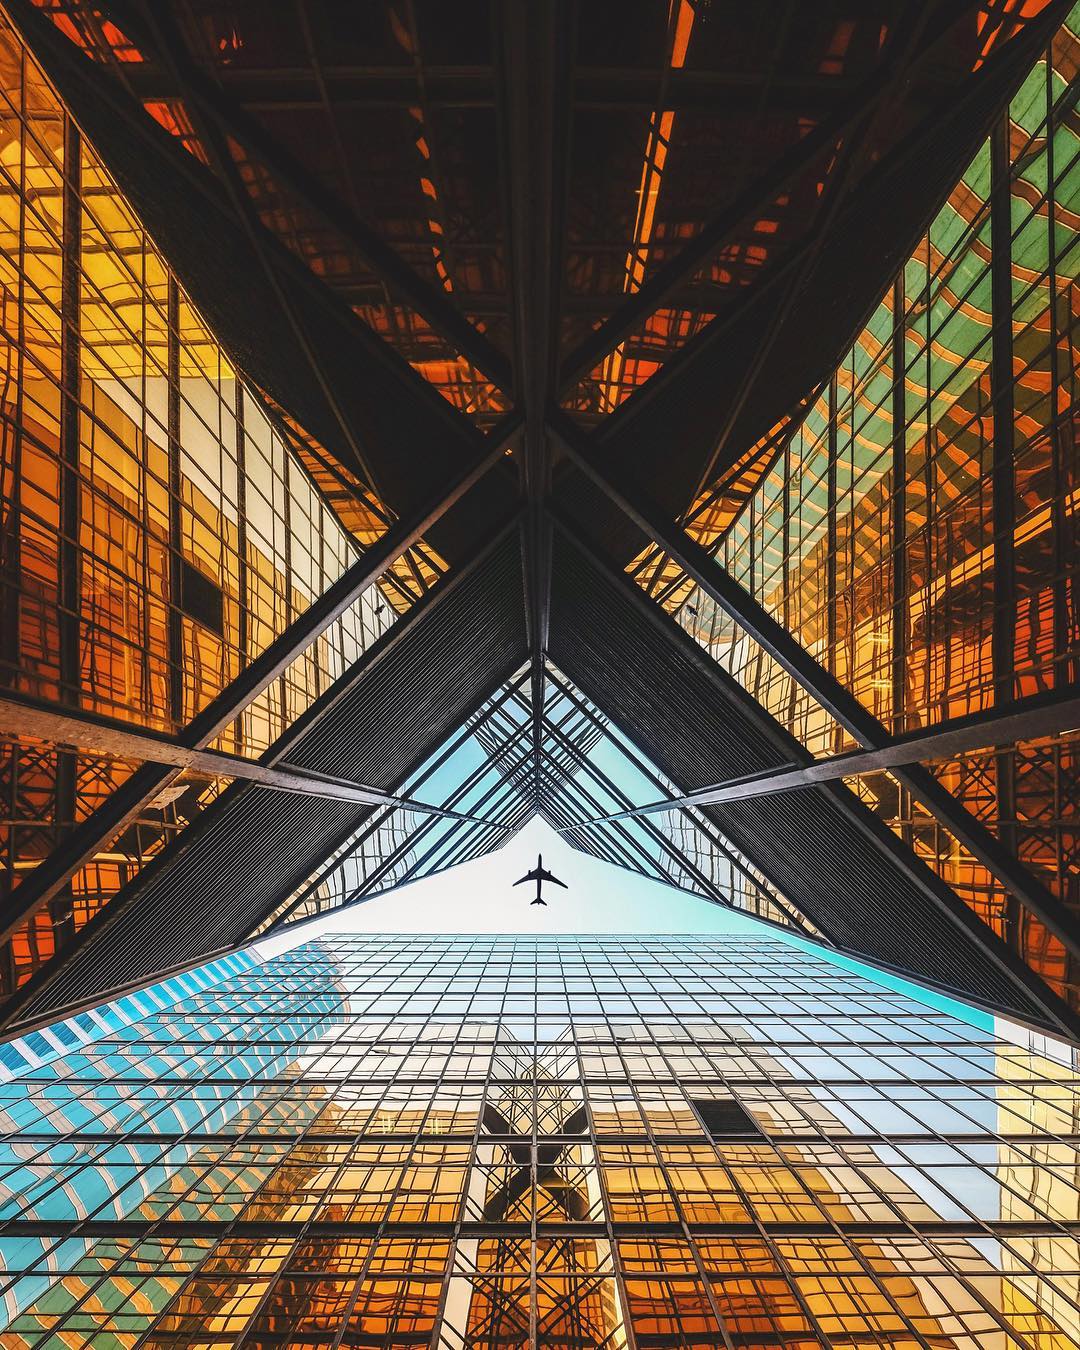 Best symmetrical photos